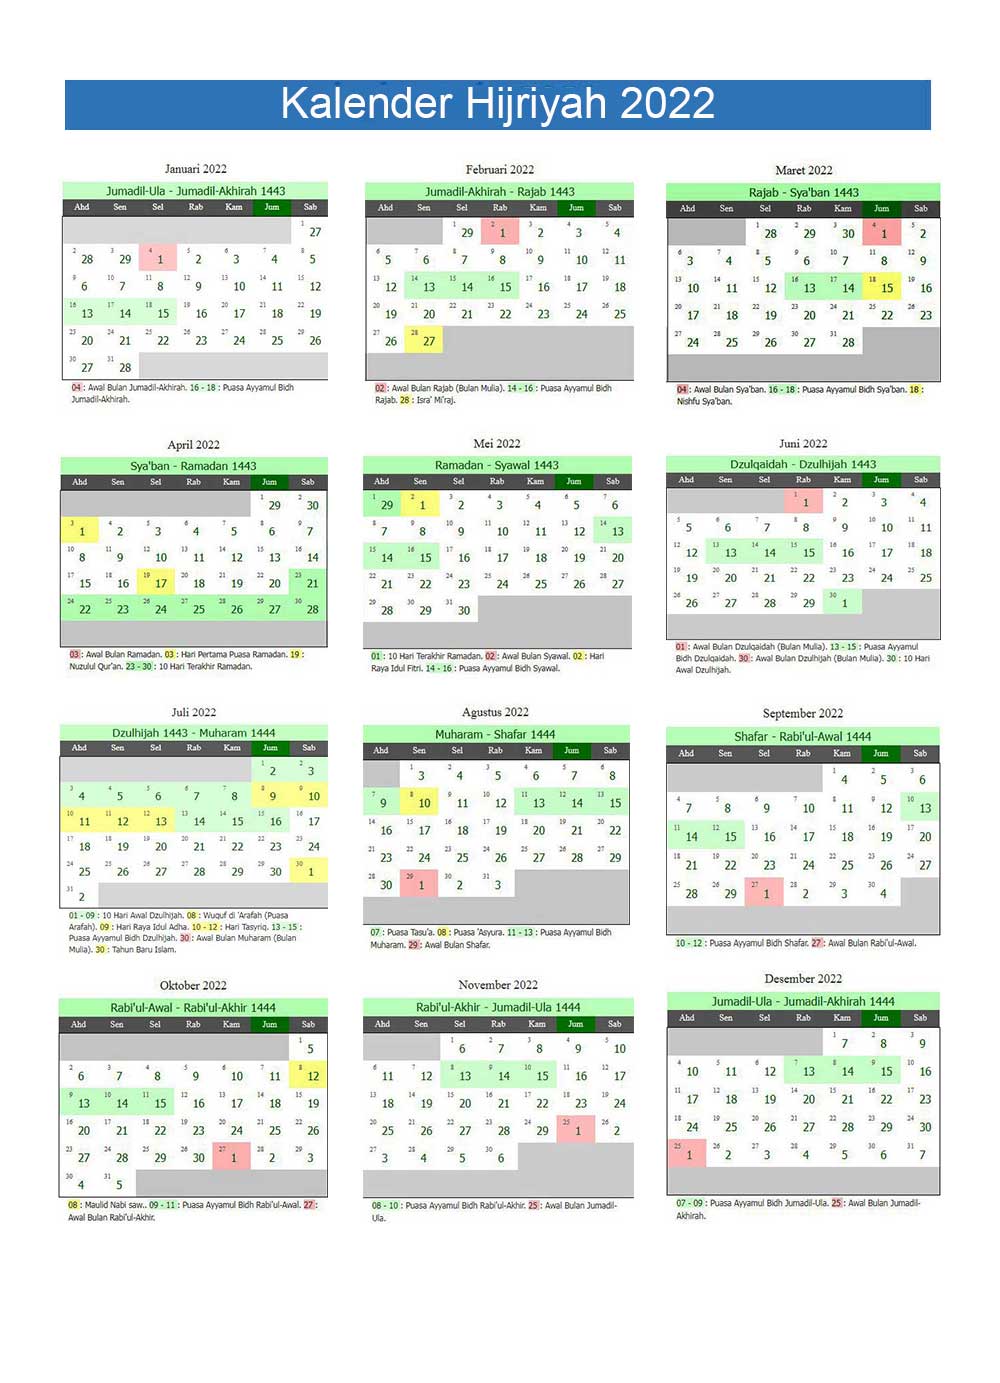 kalender hijriyah 2022 lengkap 12 bulan